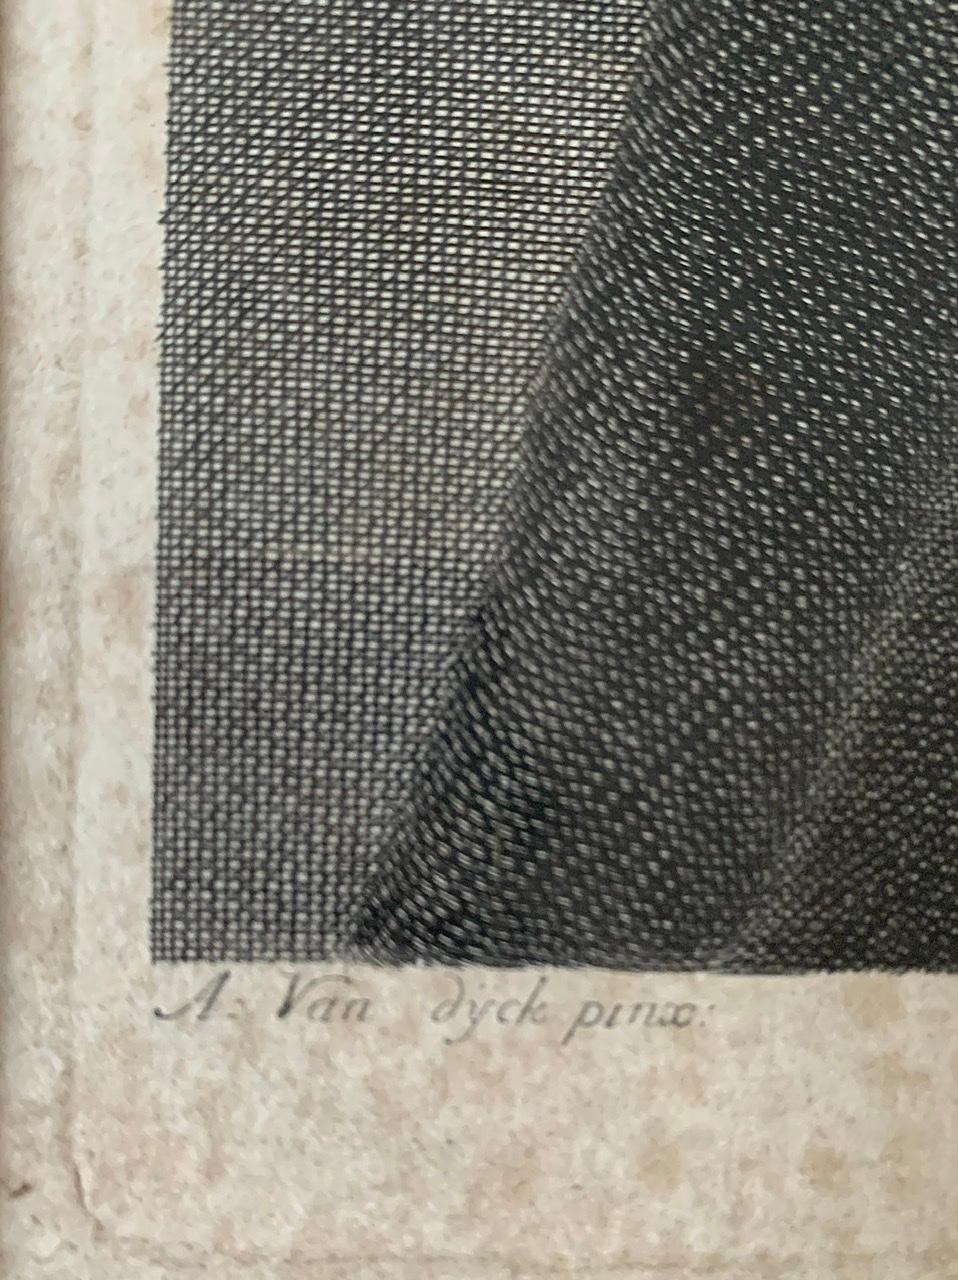 A. Van Dyck 